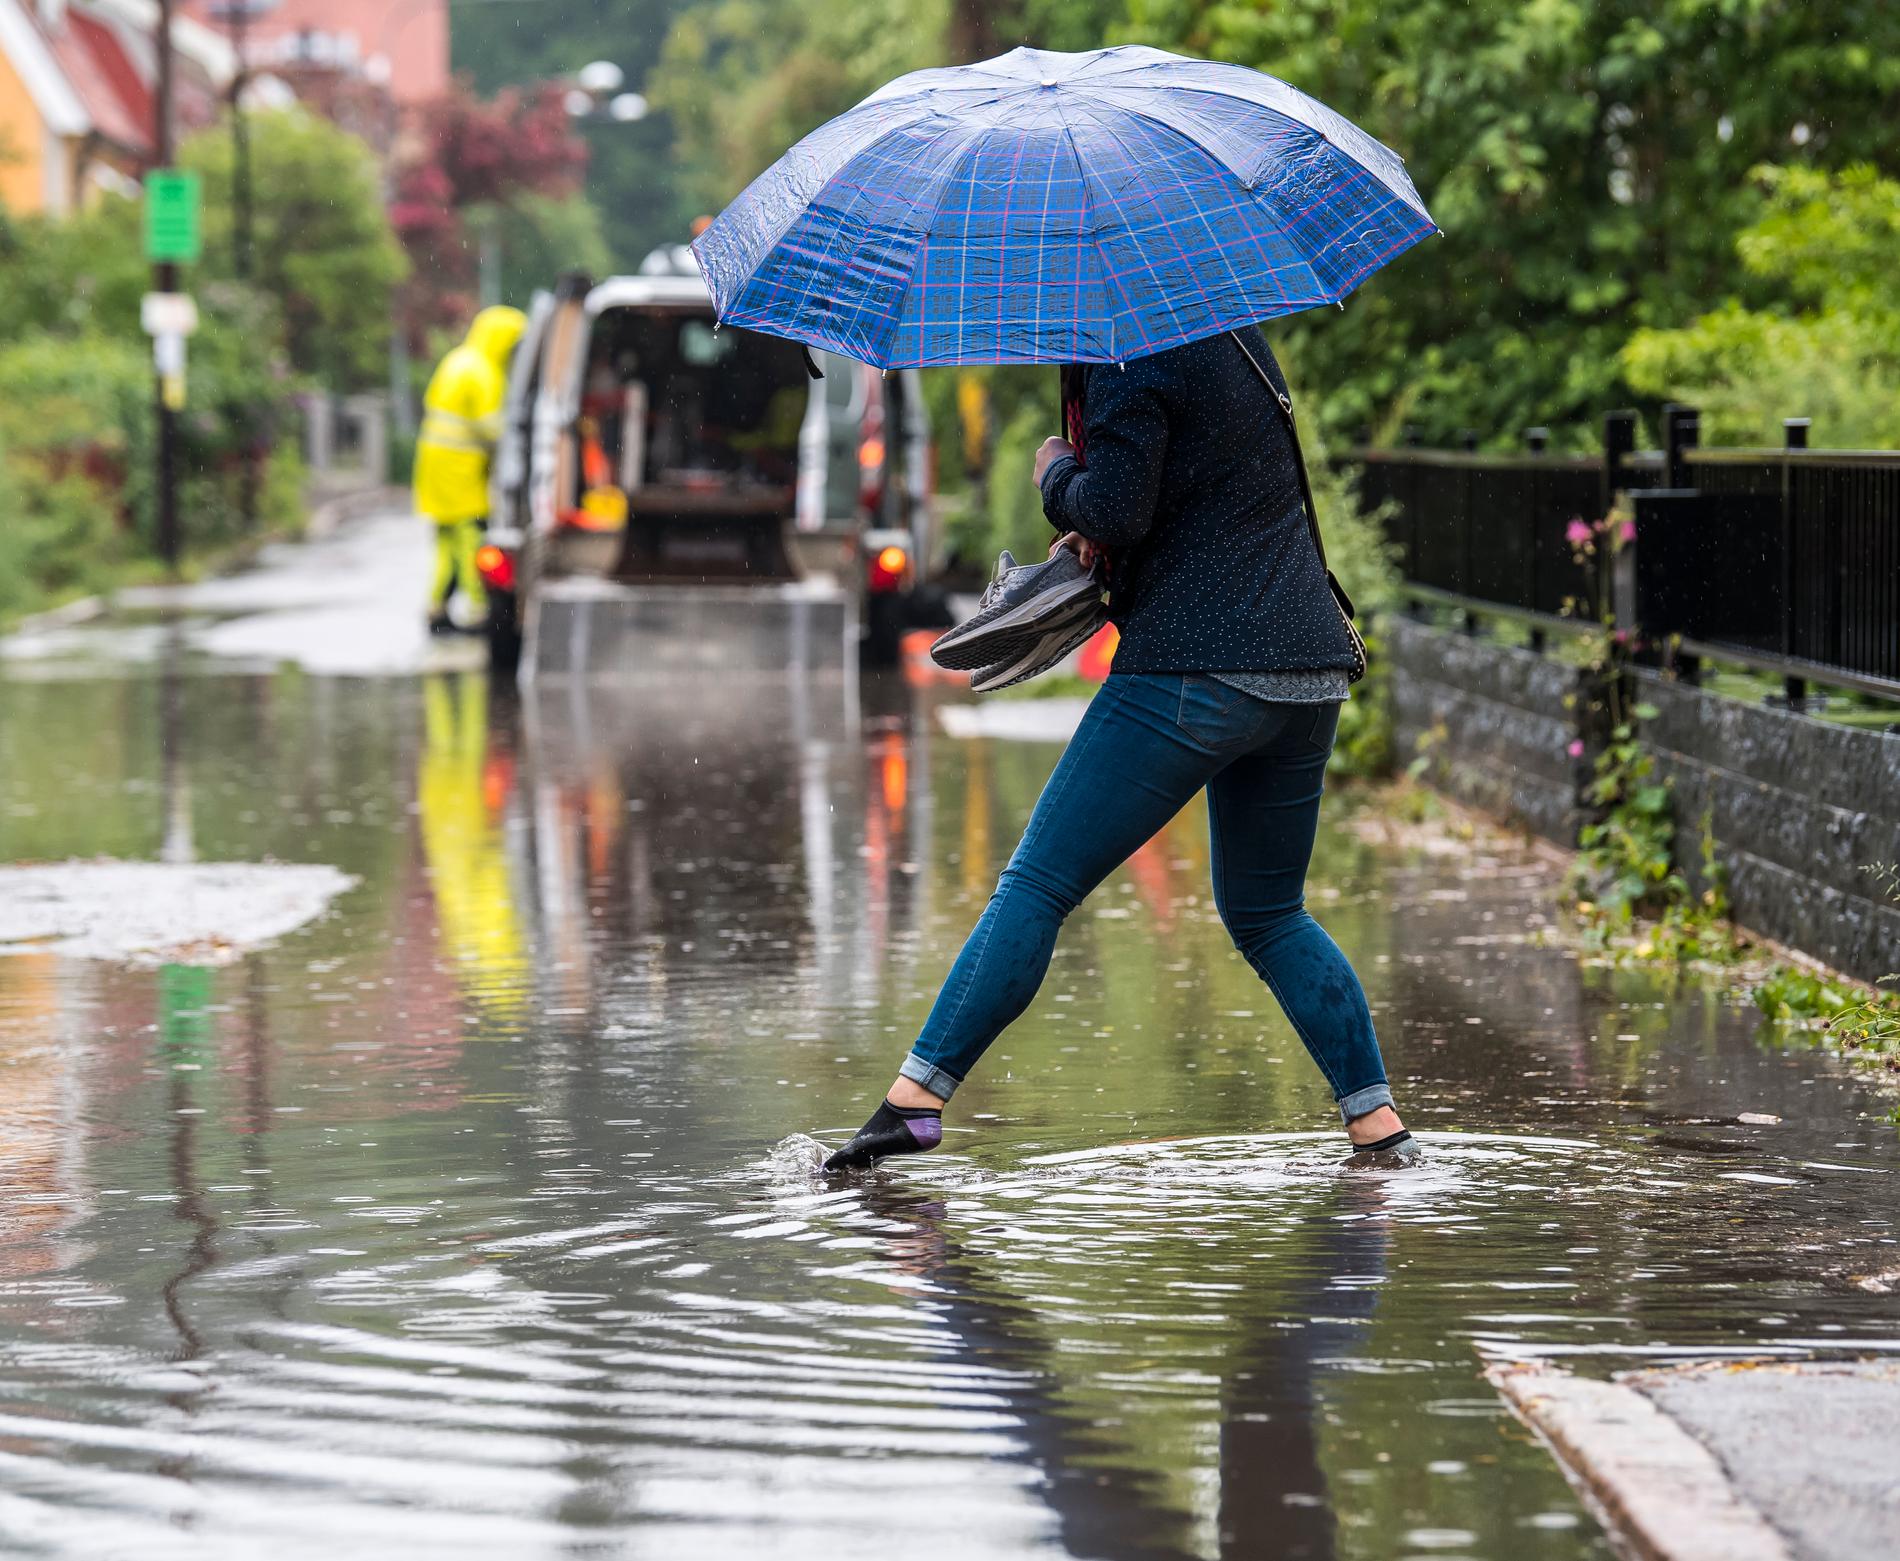 I Enskede i Stockholm vräkte regnet ner och en kvinna tvingades ta av sig skorna och vada fram.